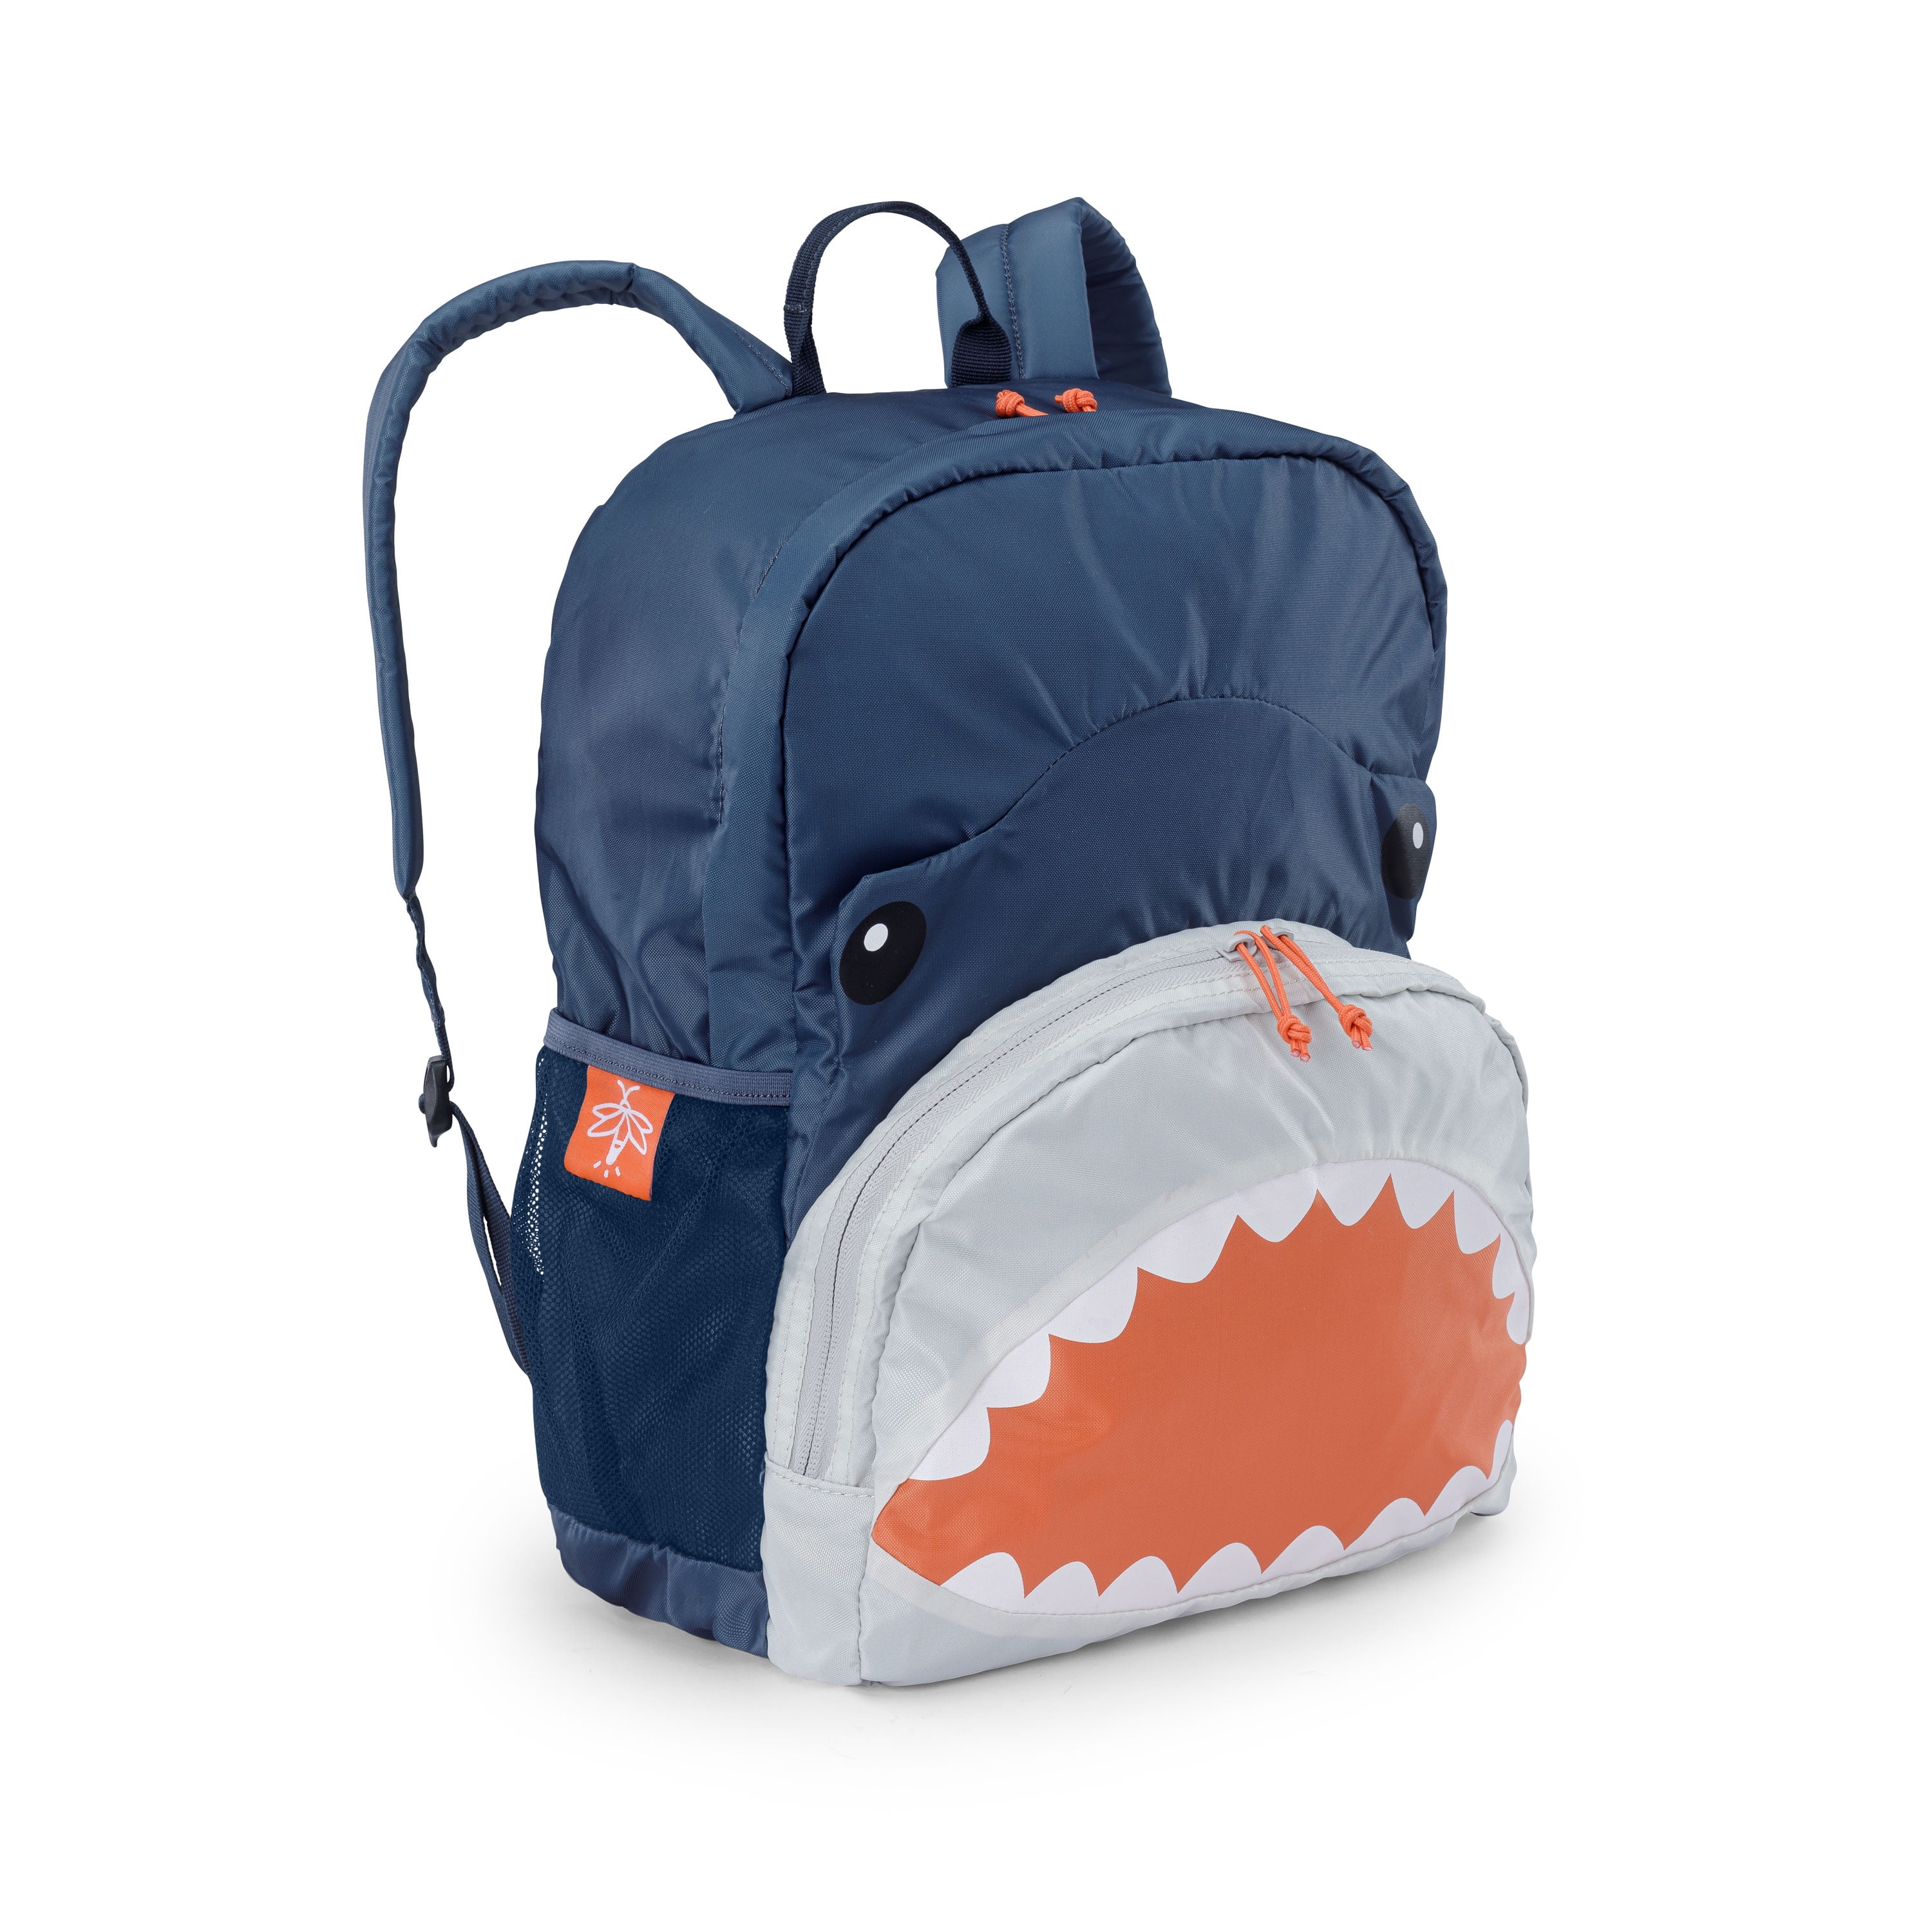 SHARP-Q Shark Kids Lightweight Canvas Travel Backpacks School Book Bag